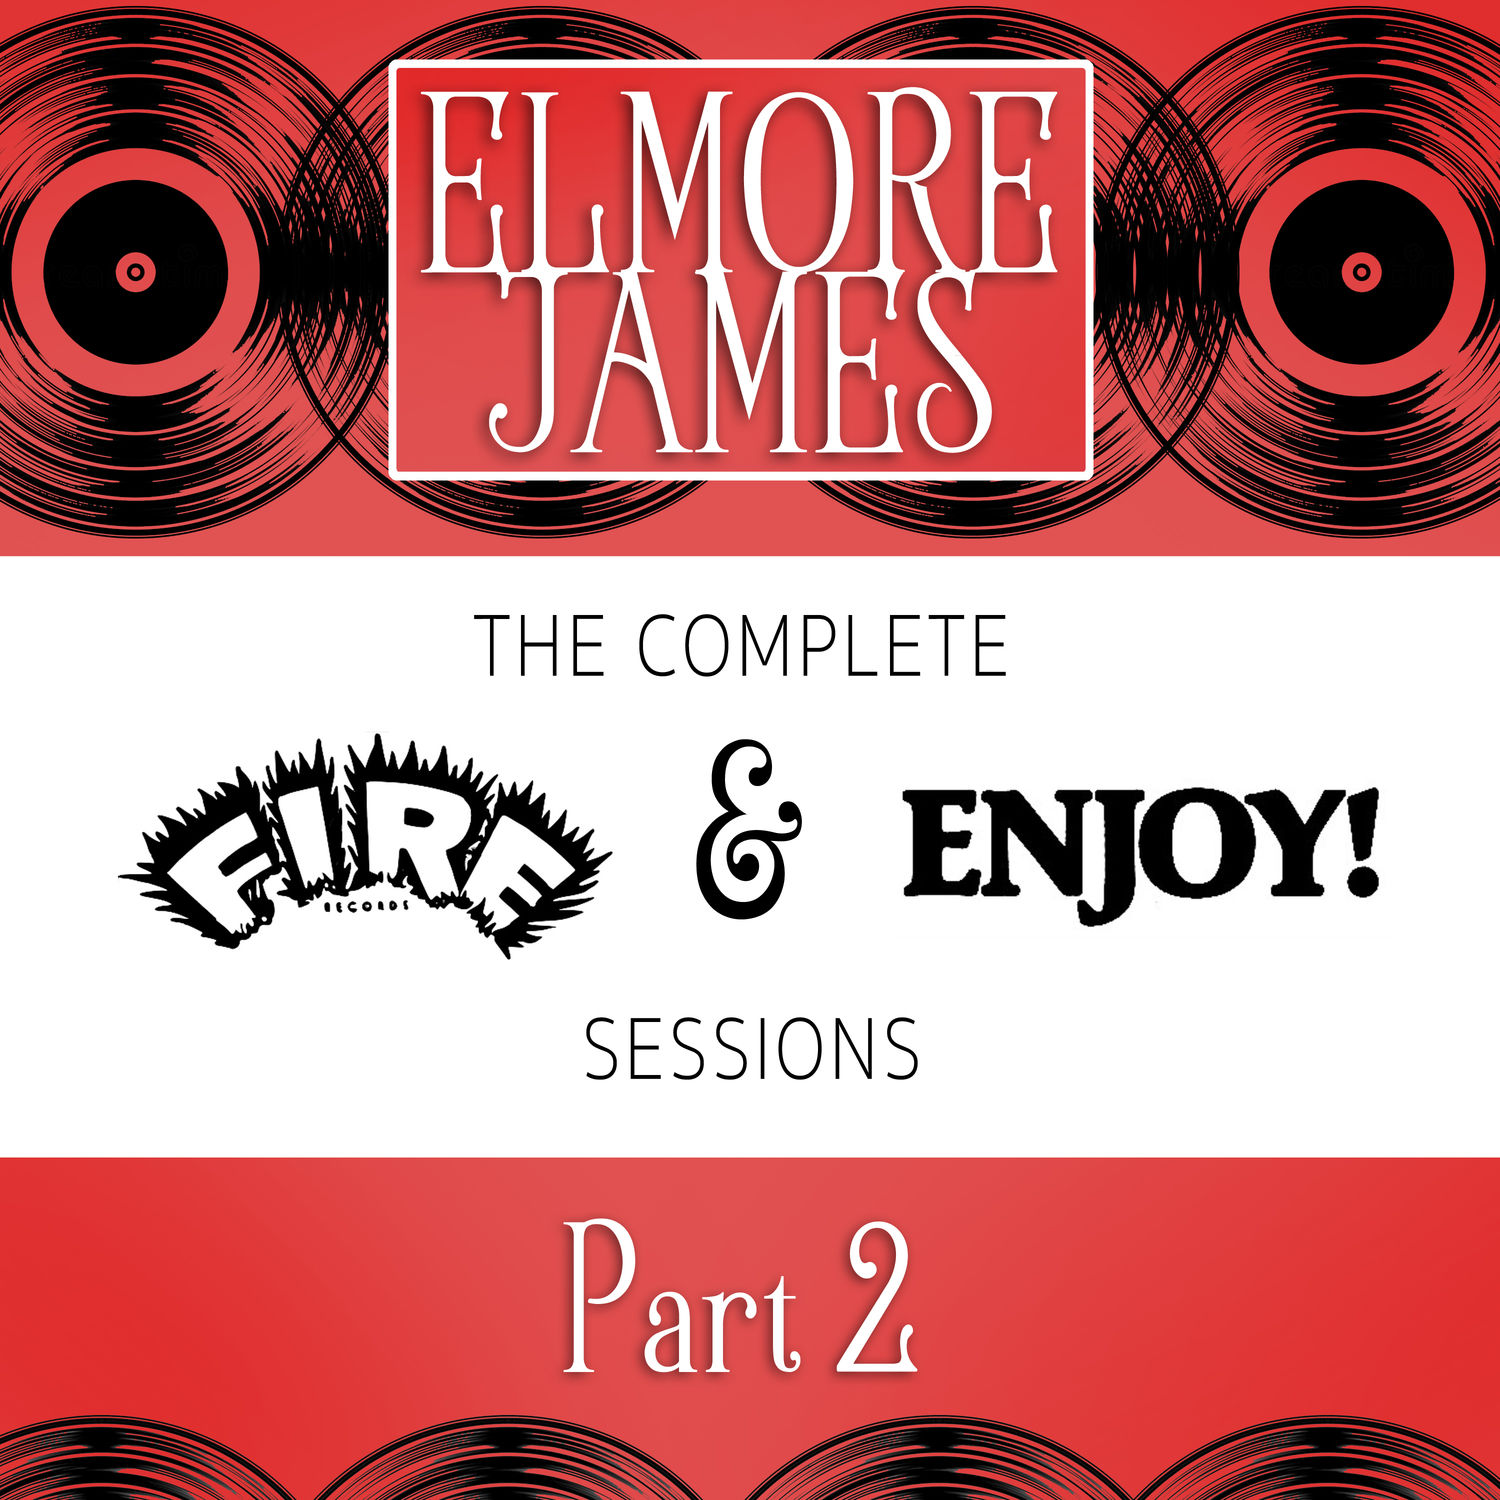 Elmore James - The Complete Fire & Enjoy Sessions, Pt. 2 (1962/2021) [FLAC 24bit/96kHz]